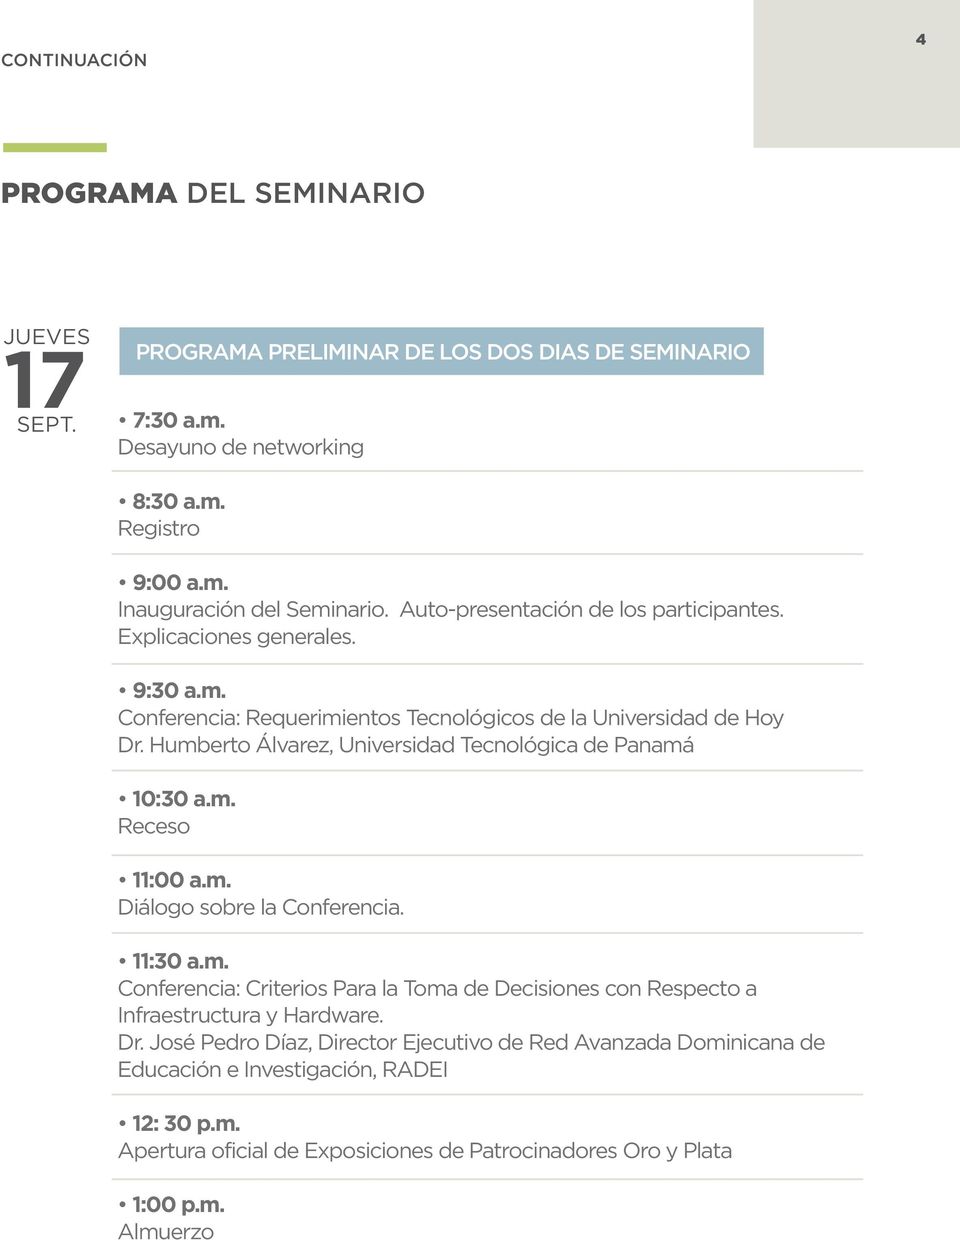 Humberto Álvarez, Universidad Tecnológica de Panamá 10:30 a.m. Receso 11:00 a.m. Diálogo sobre la Conferencia. 11:30 a.m. Conferencia: Criterios Para la Toma de Decisiones con Respecto a Infraestructura y Hardware.